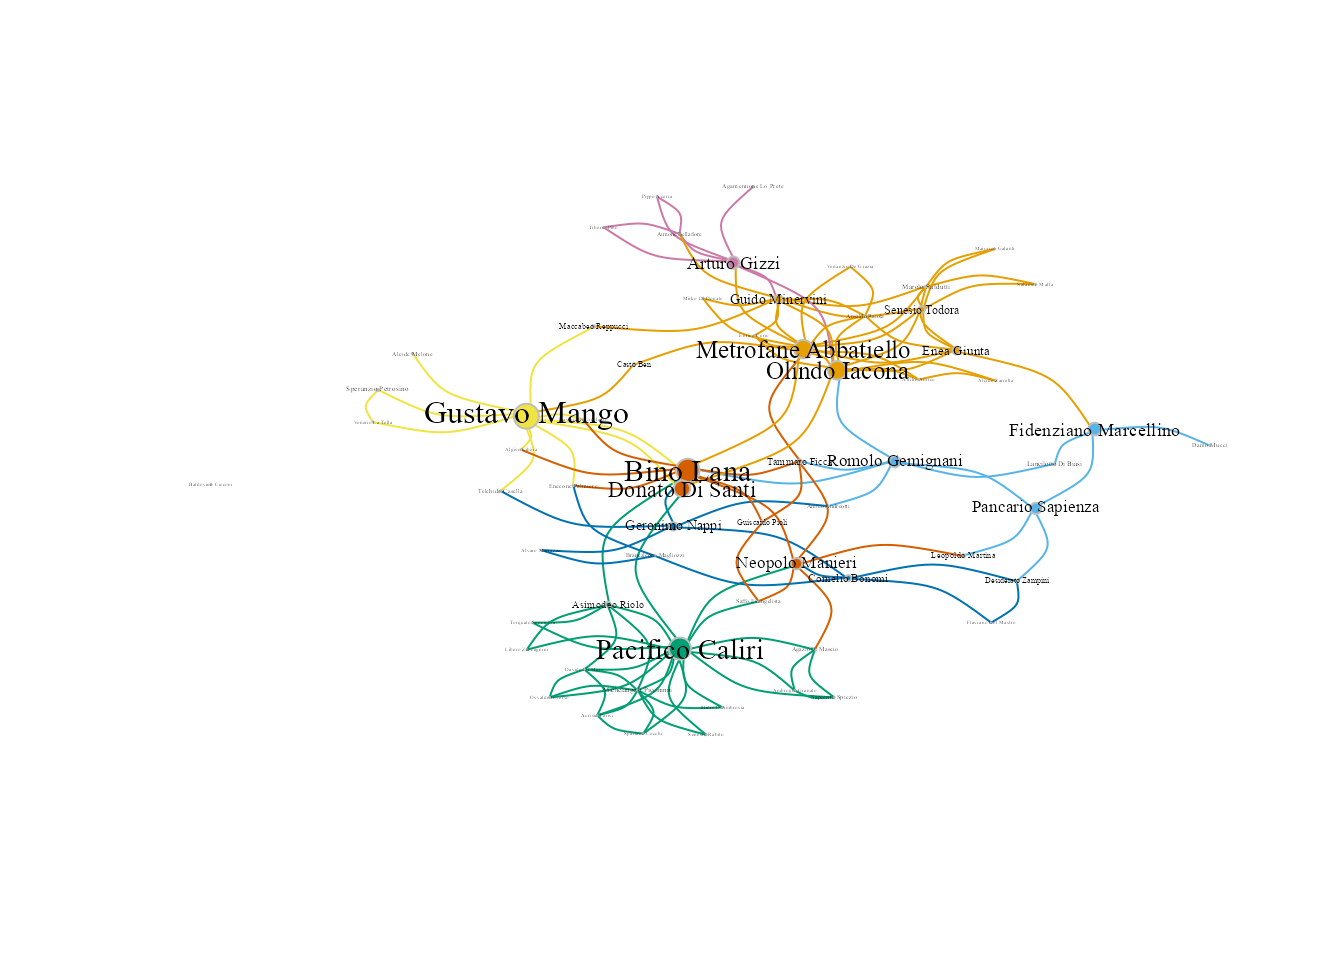 Visualización de comunidades de la mafia con el algoritmo Fruchterman-Reingold.